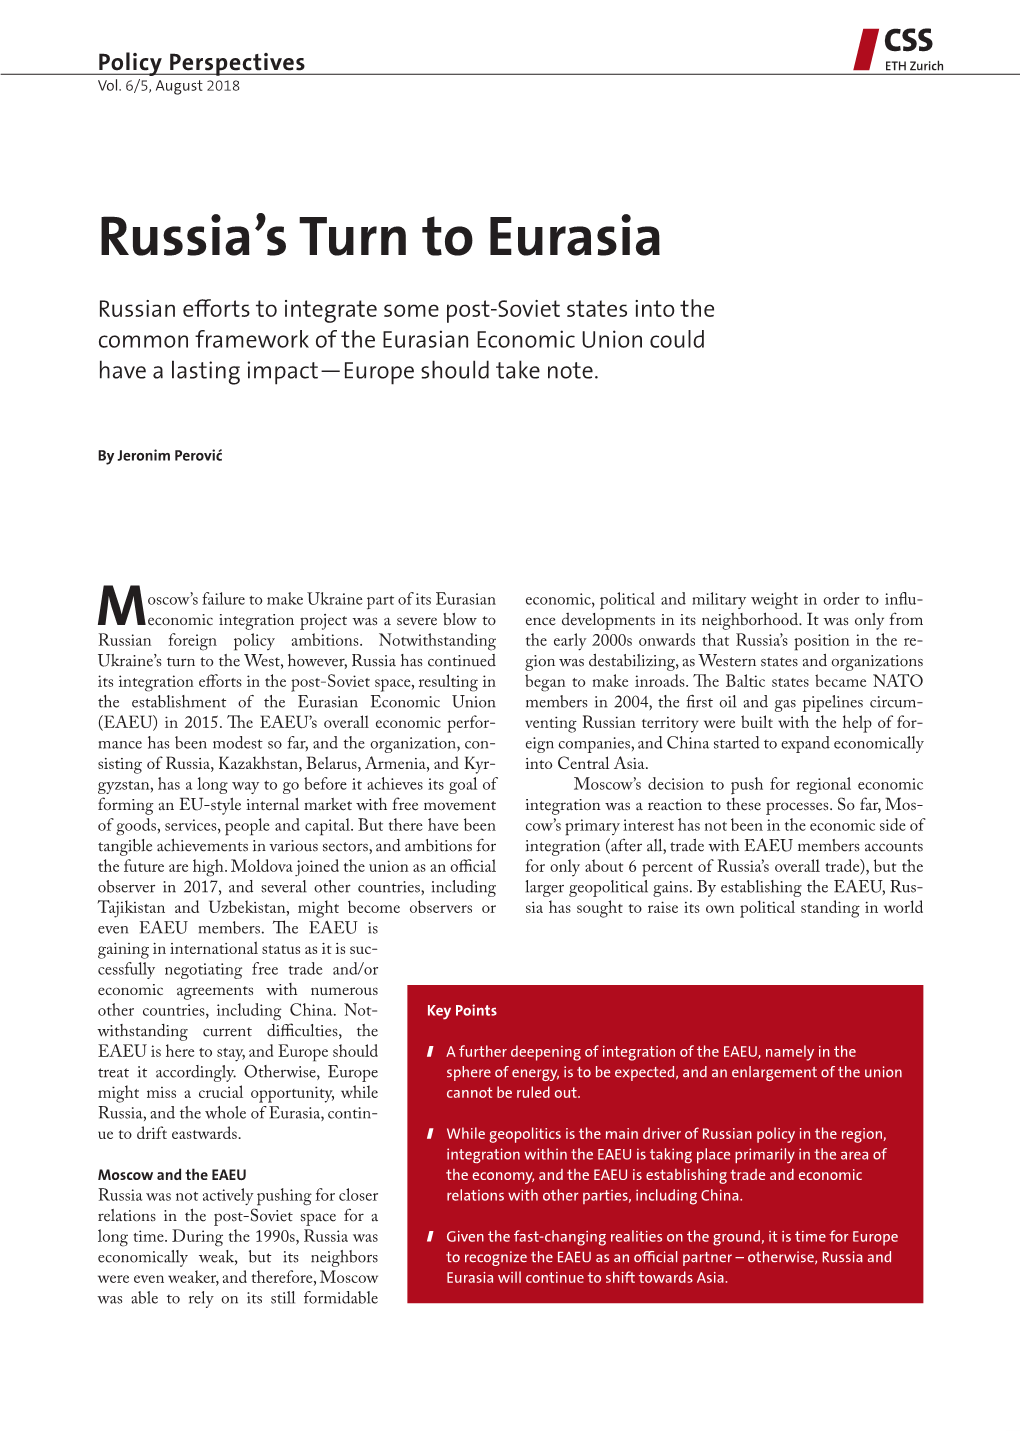 Russia's Turn to Eurasia